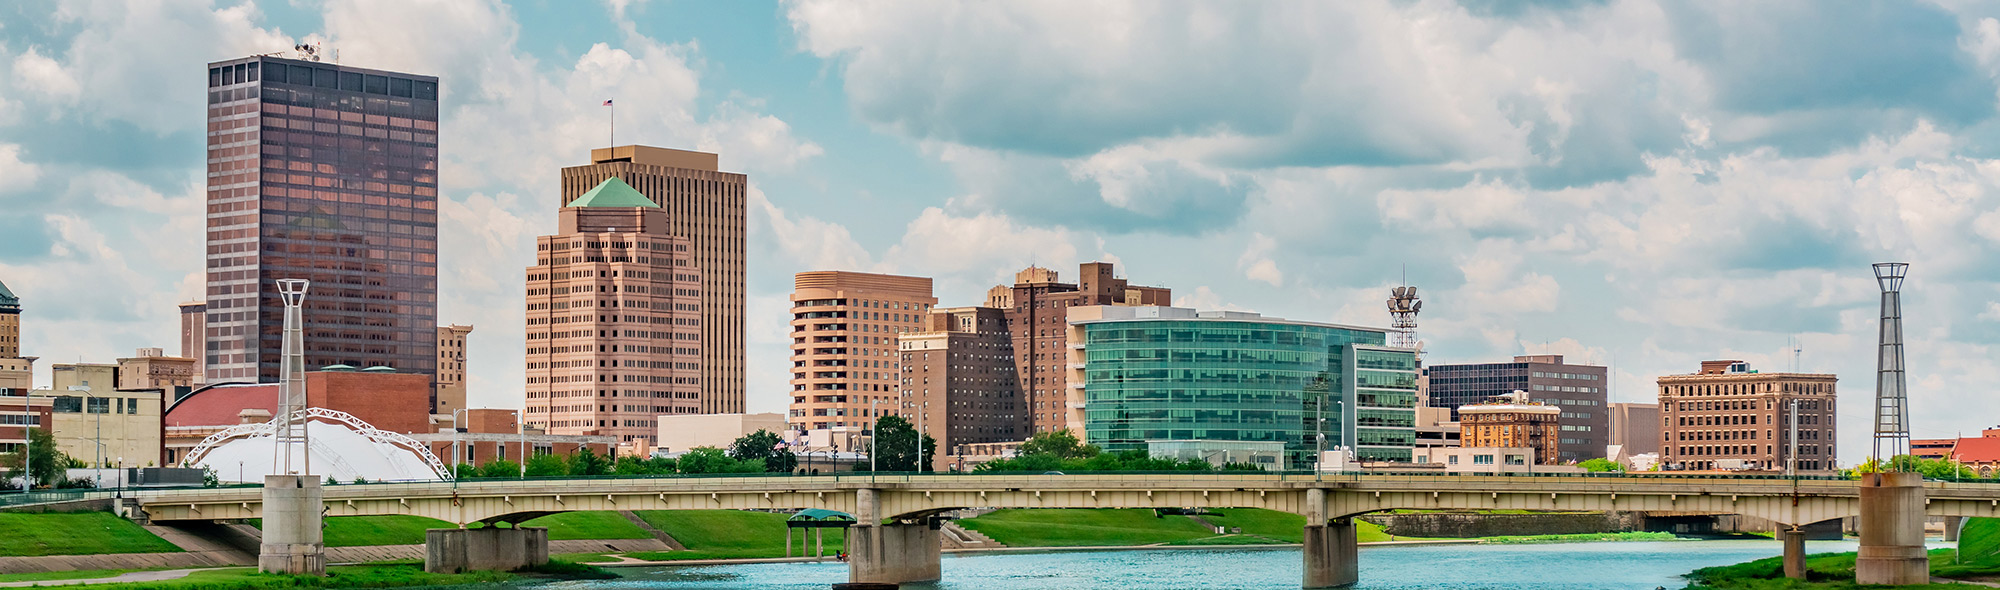 Dayton OH skyline